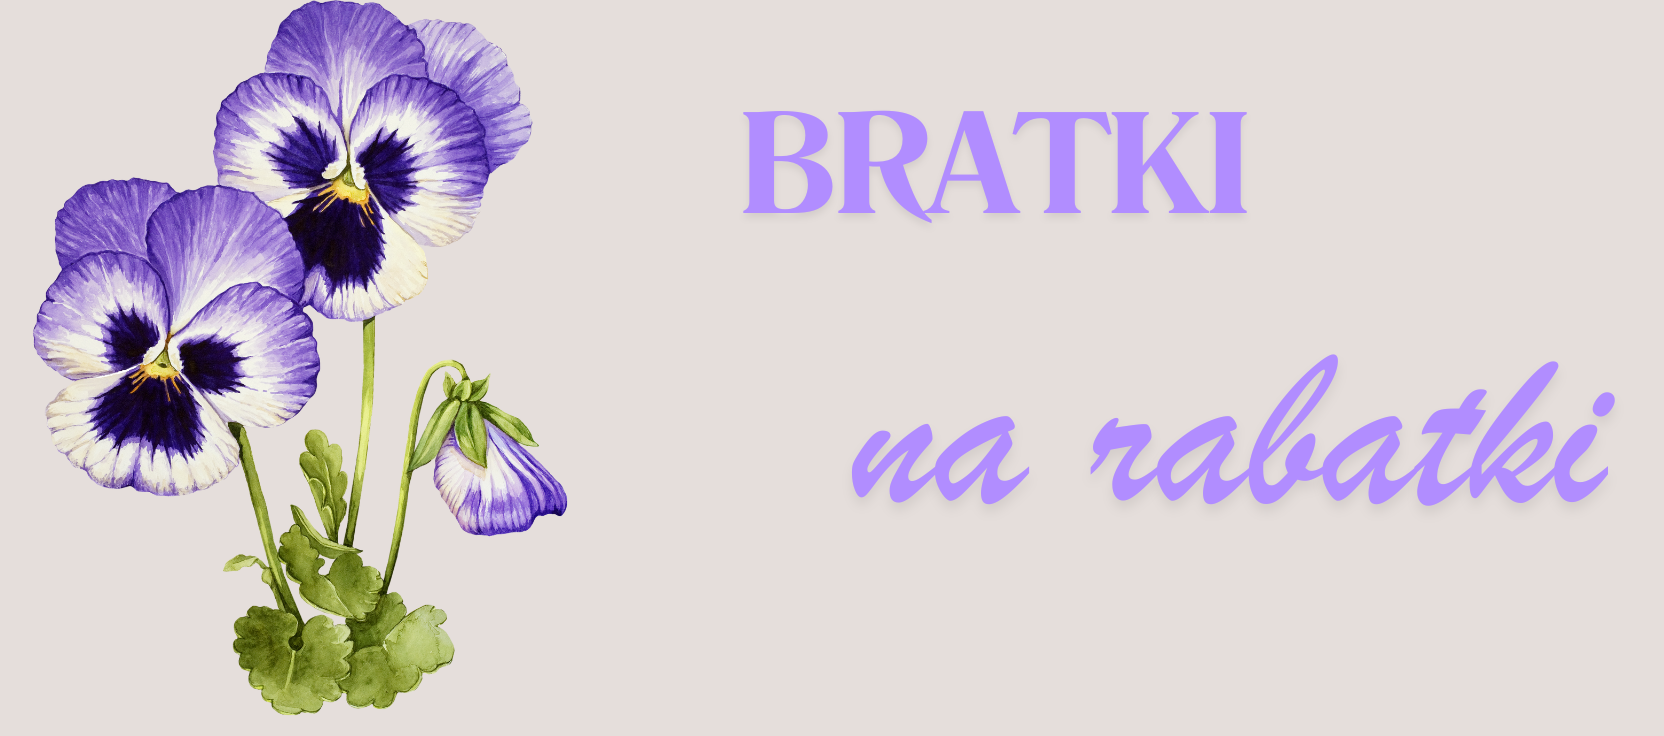 Obraz zawierający kwiat, roślina, fiołek, bratek

Opis wygenerowany automatycznie